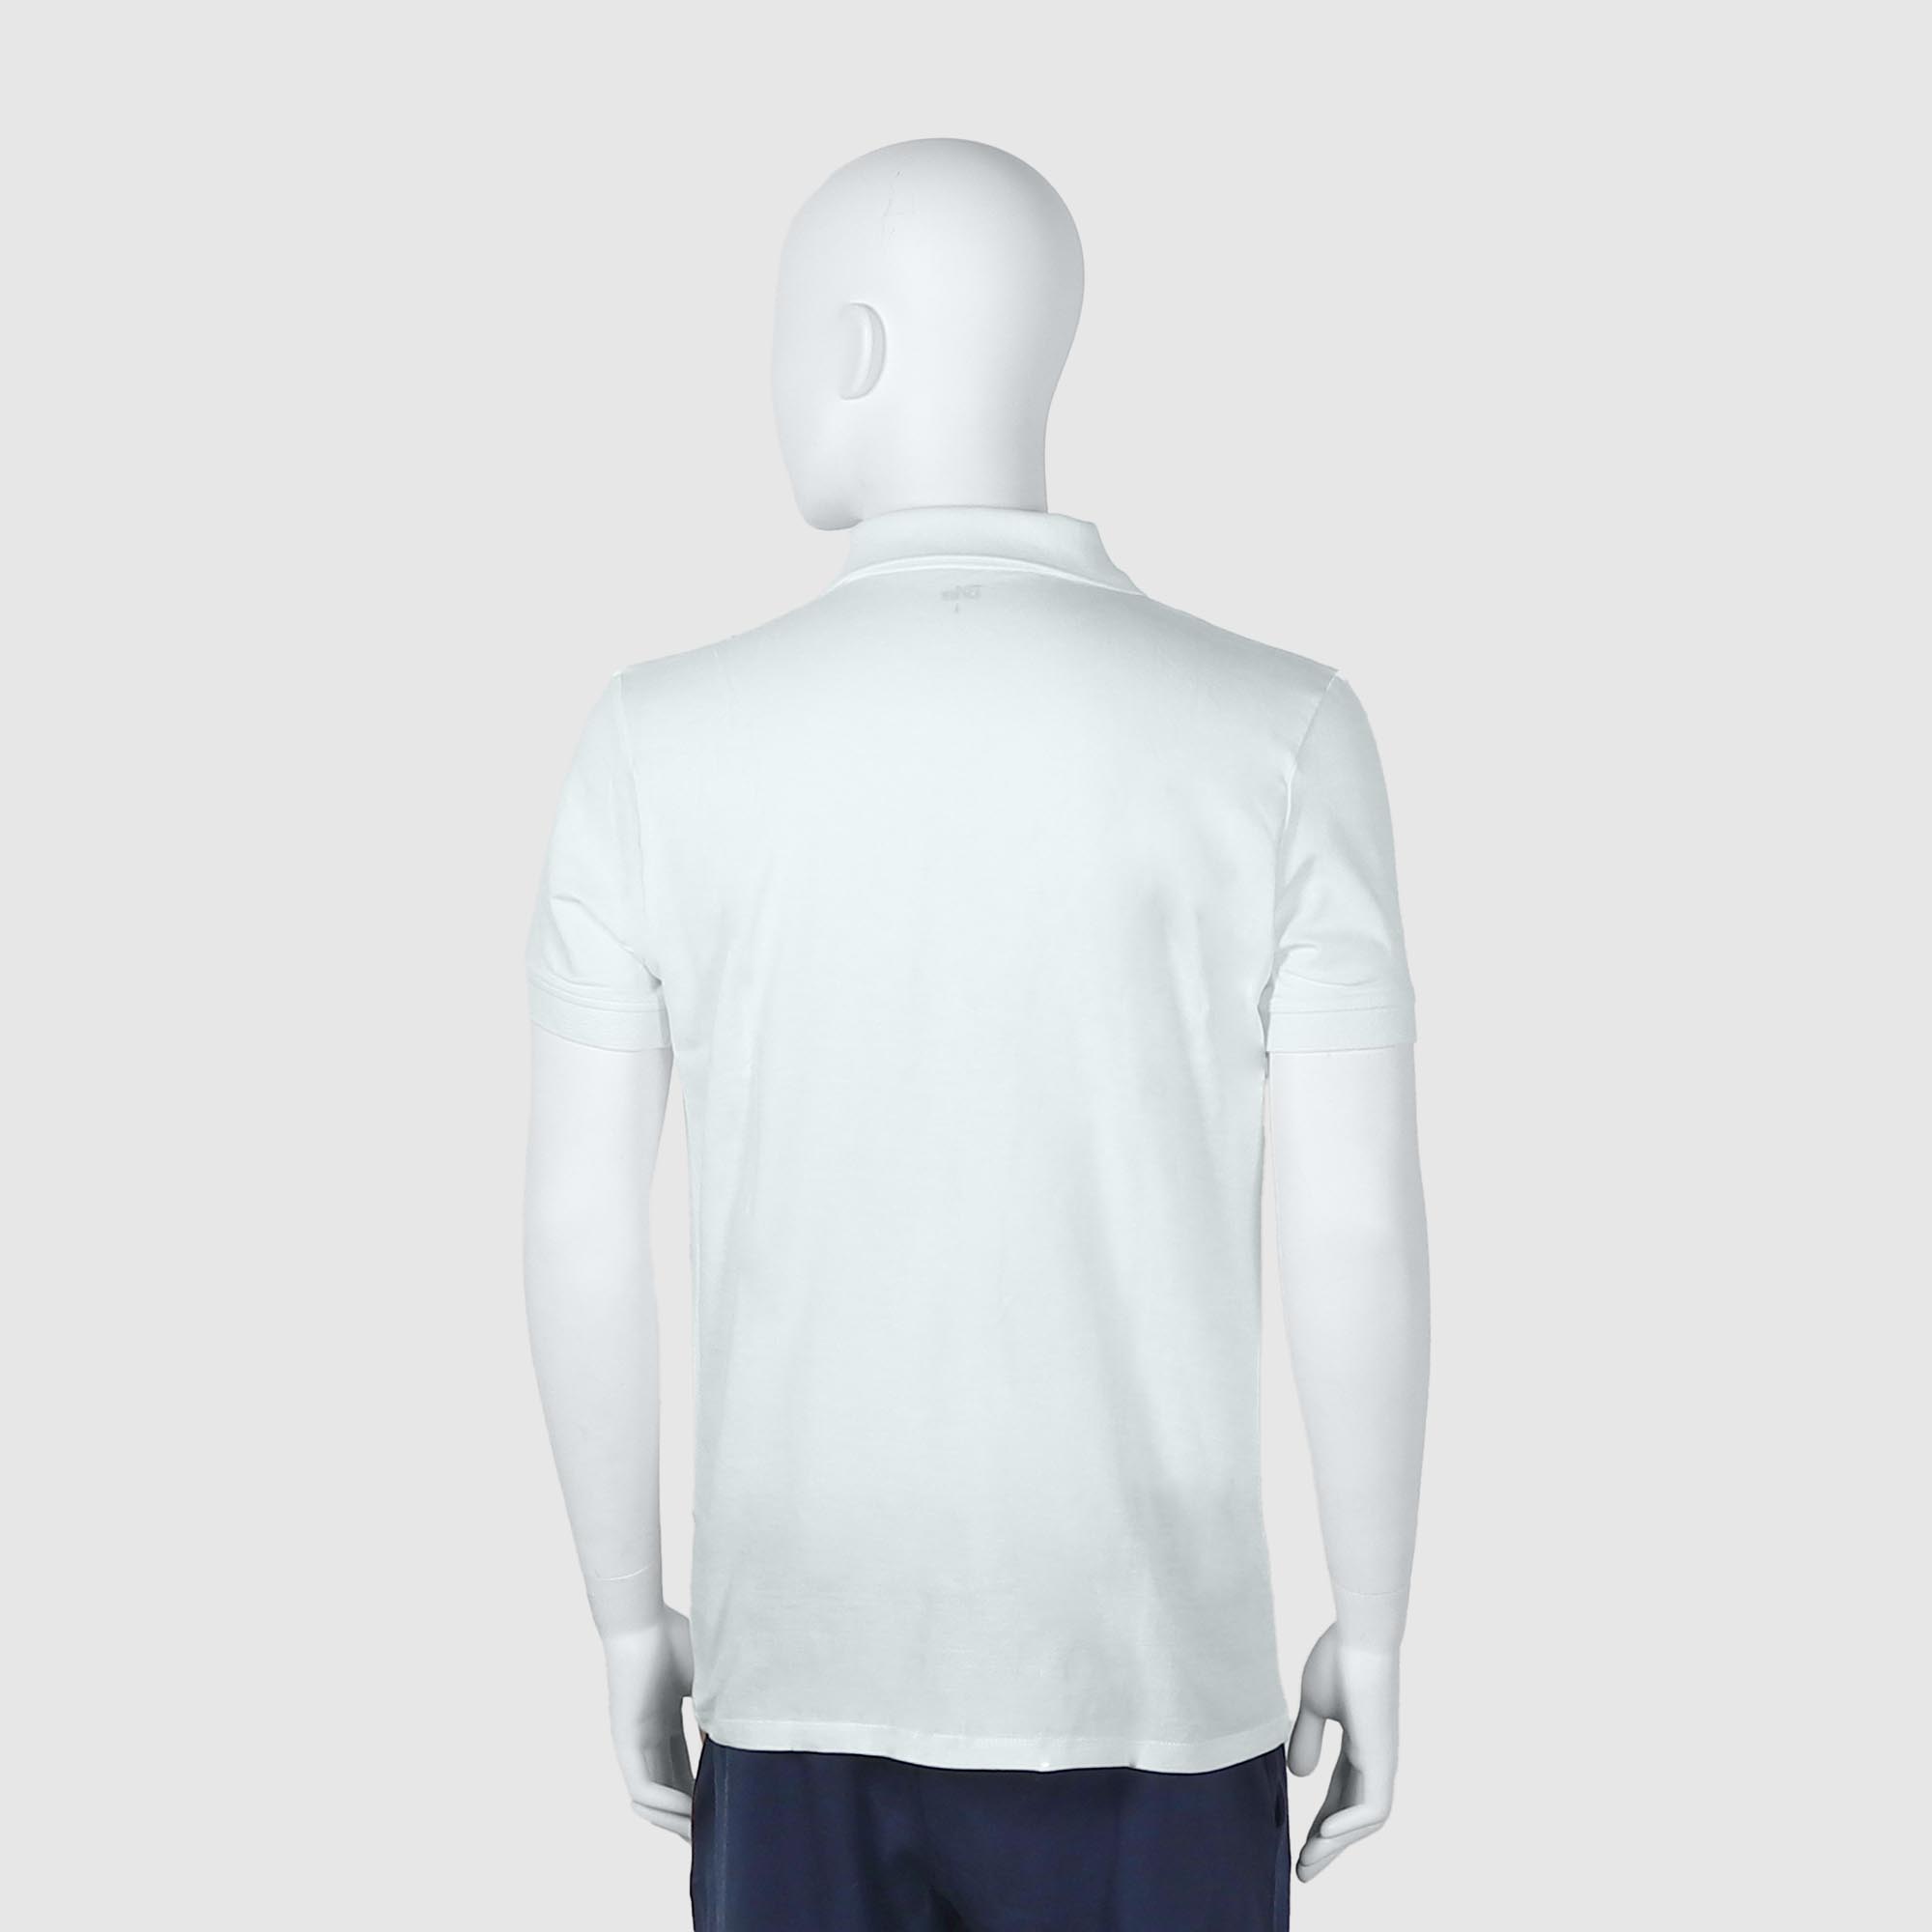 Мужская футболка-поло Diva Teks белая (DTD-07), цвет белый, размер 52-54 - фото 2